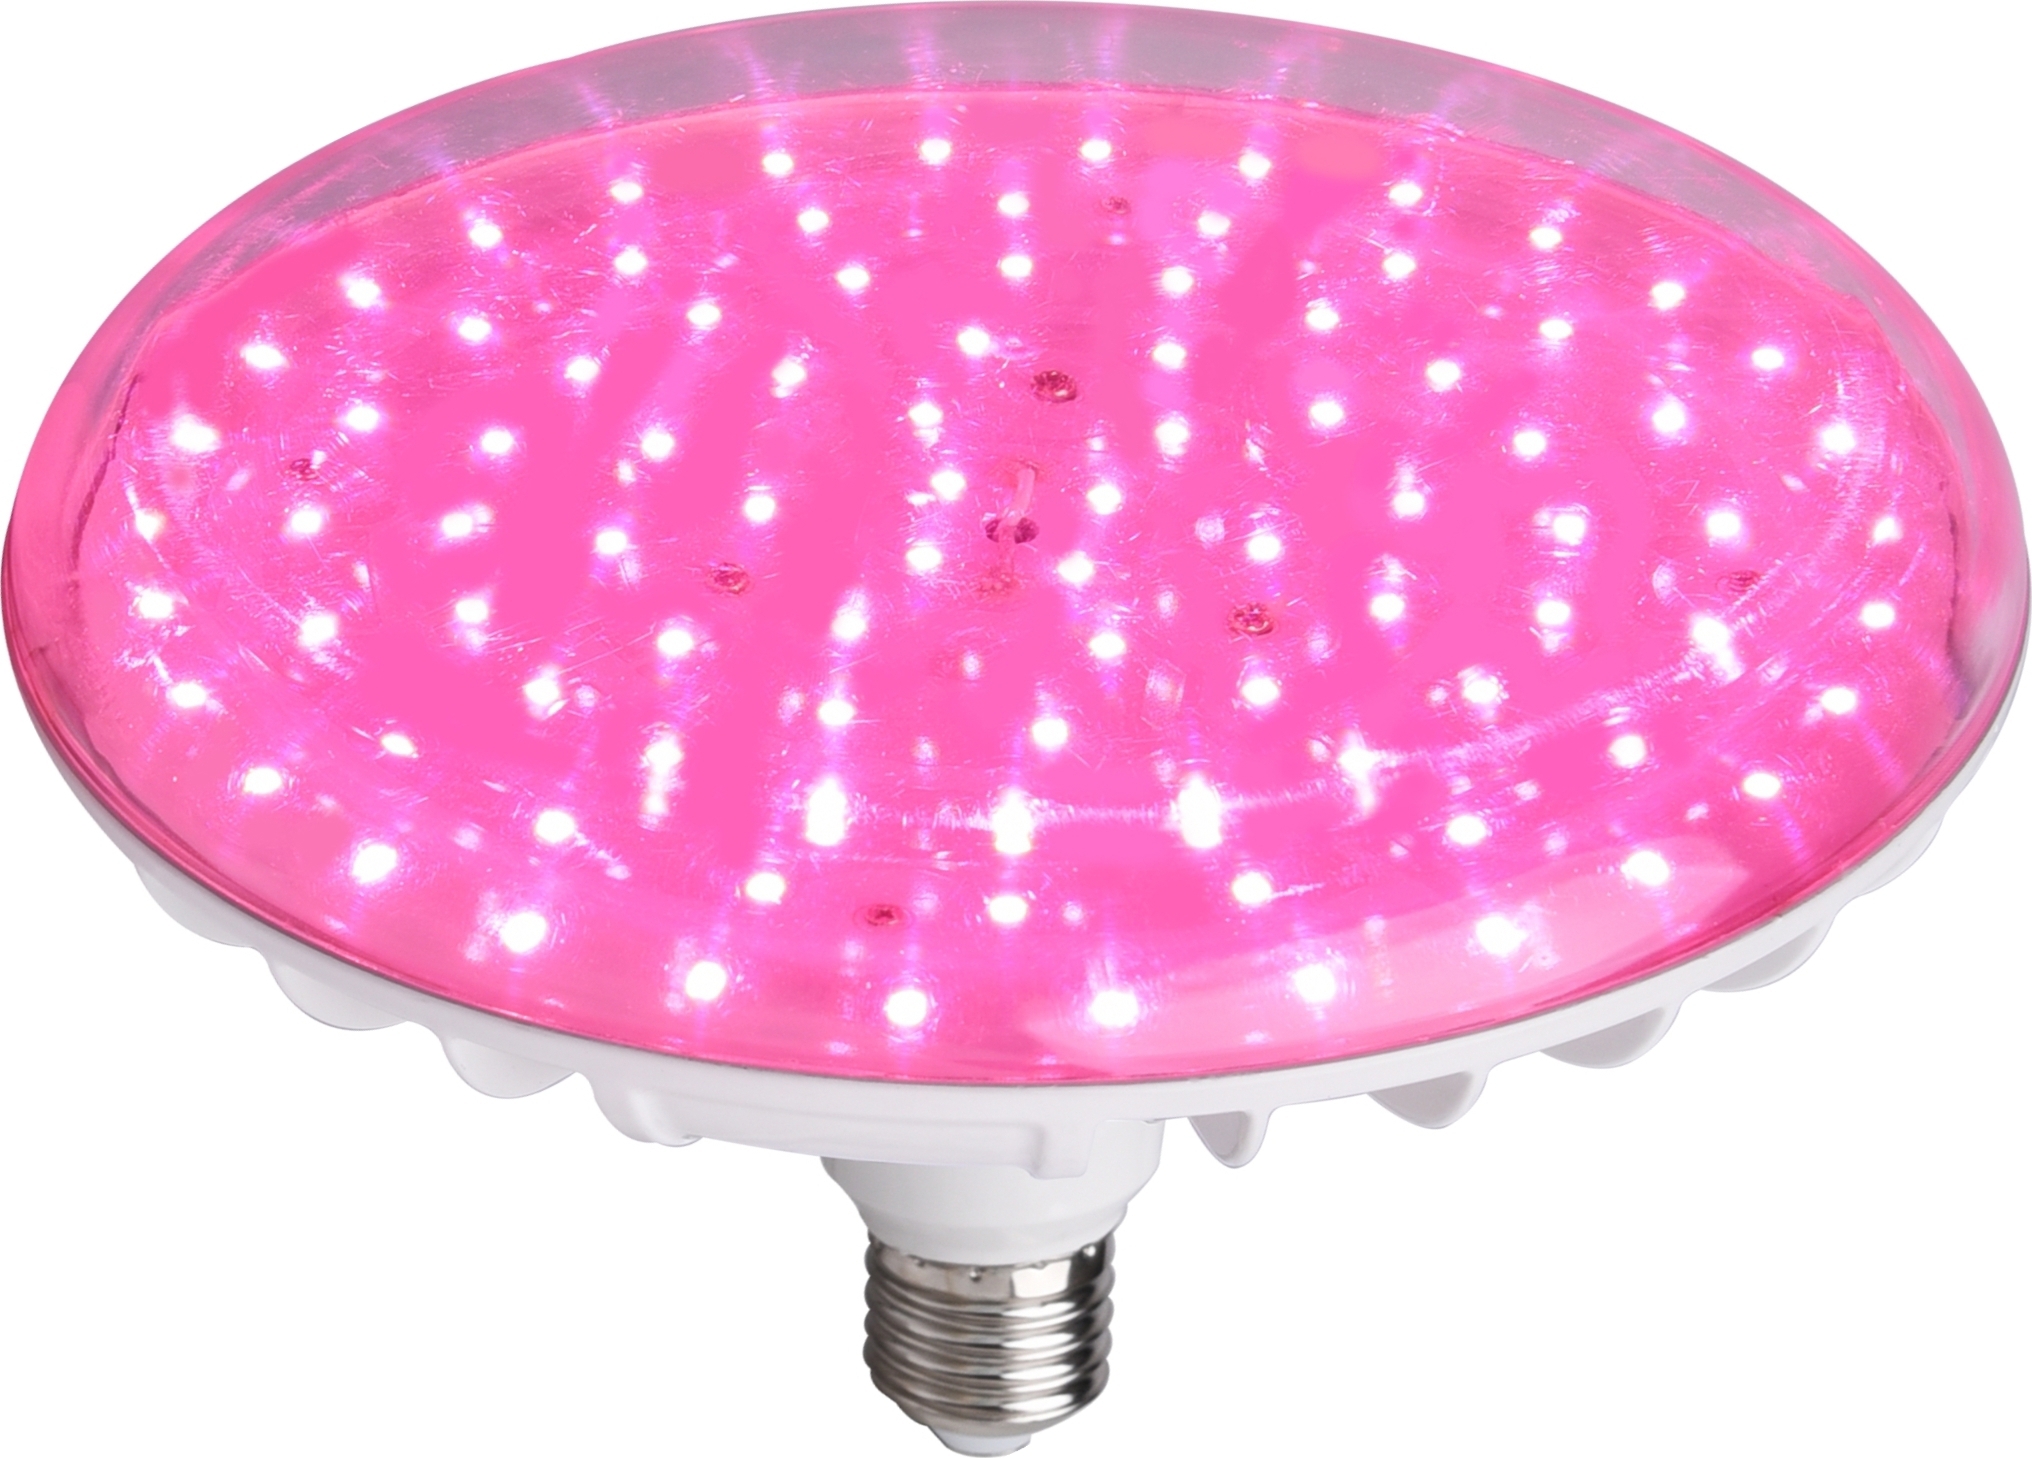 83102526 Фитолампа светодиодная для растений E27 220-240 В 60 Вт 600 лм диск розовый свет STLM-0038998 ECOTEC